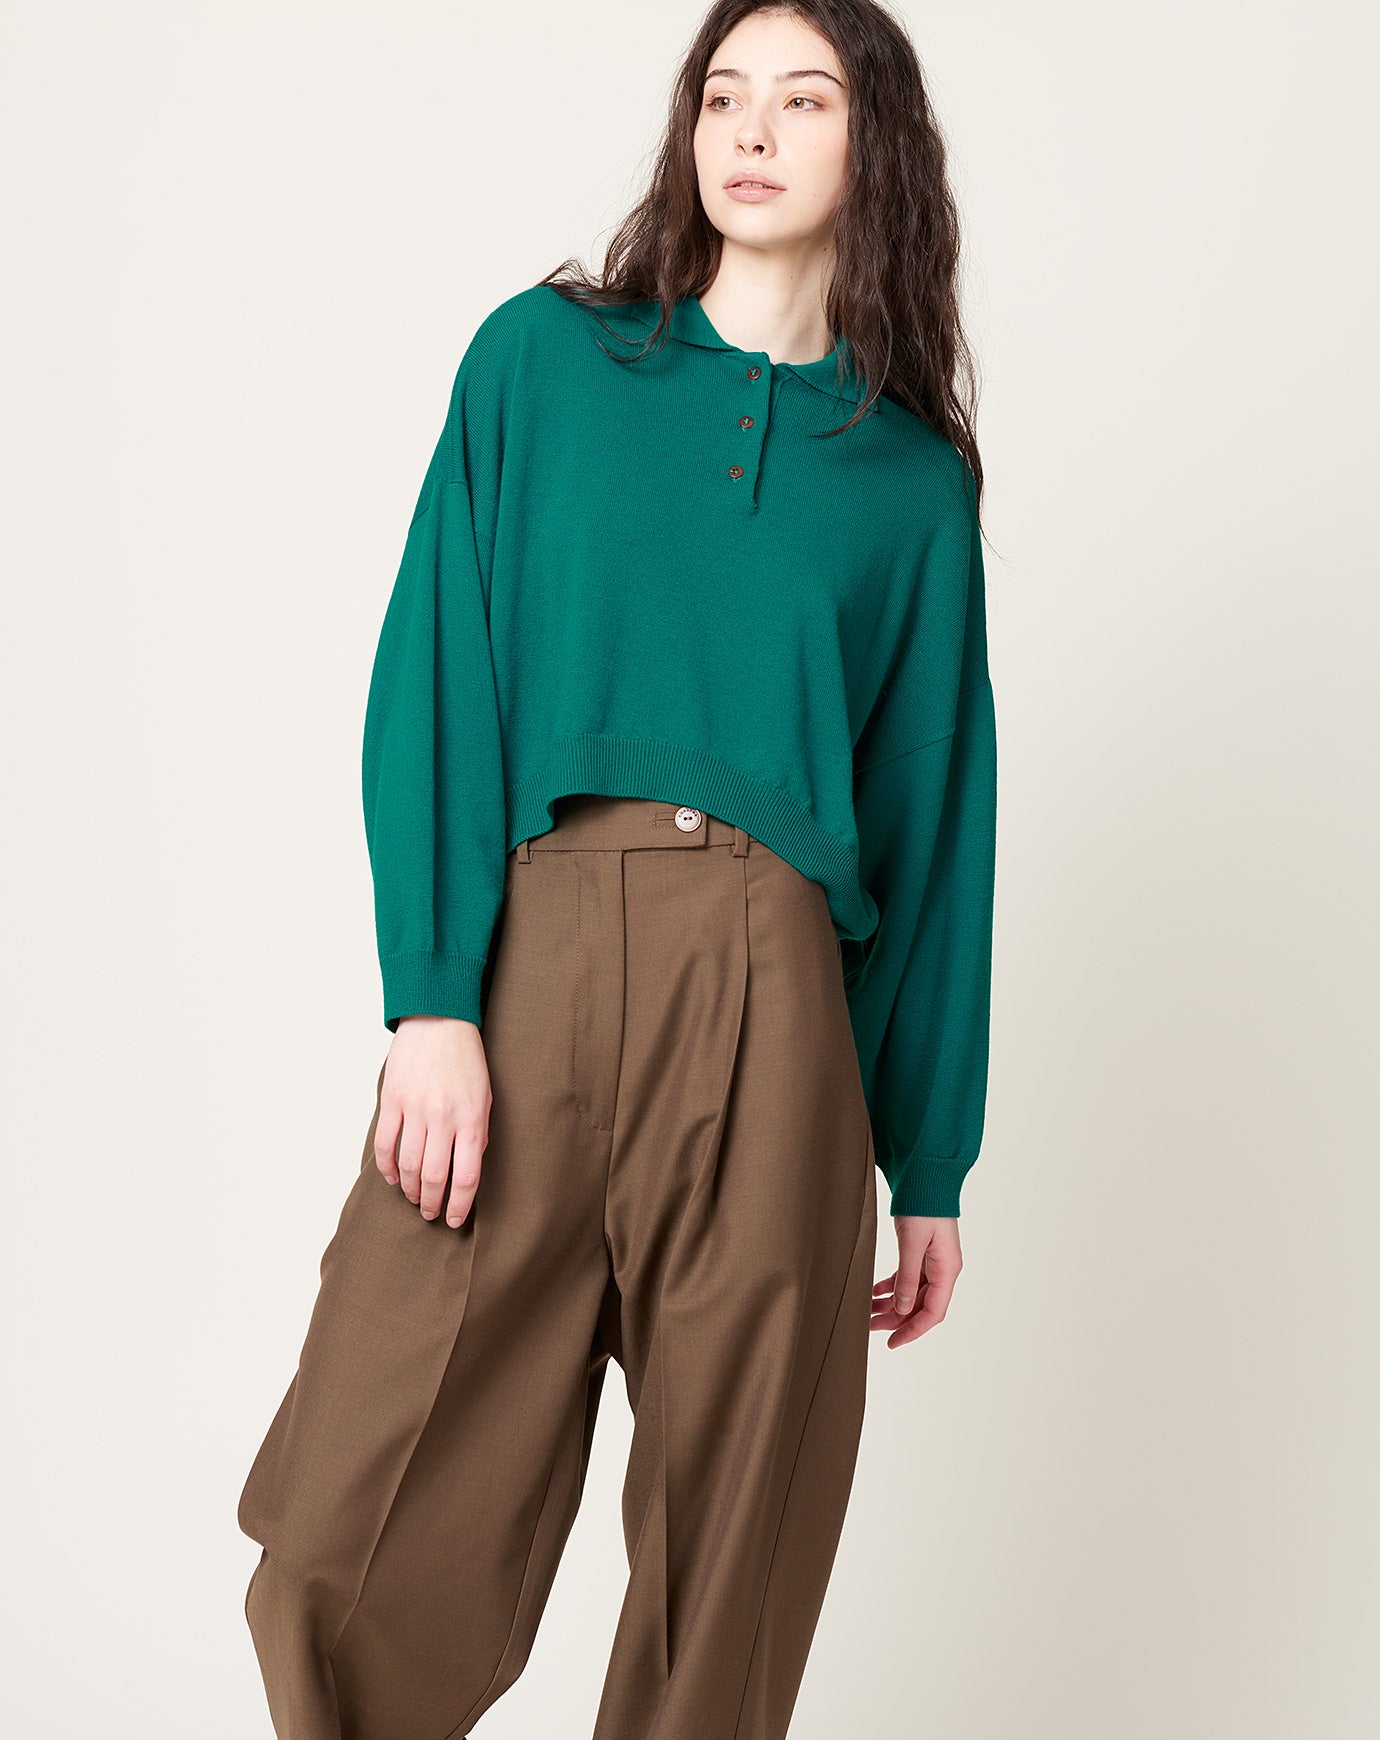 Cordera Merino Wool Polo Sweater in Teal Green